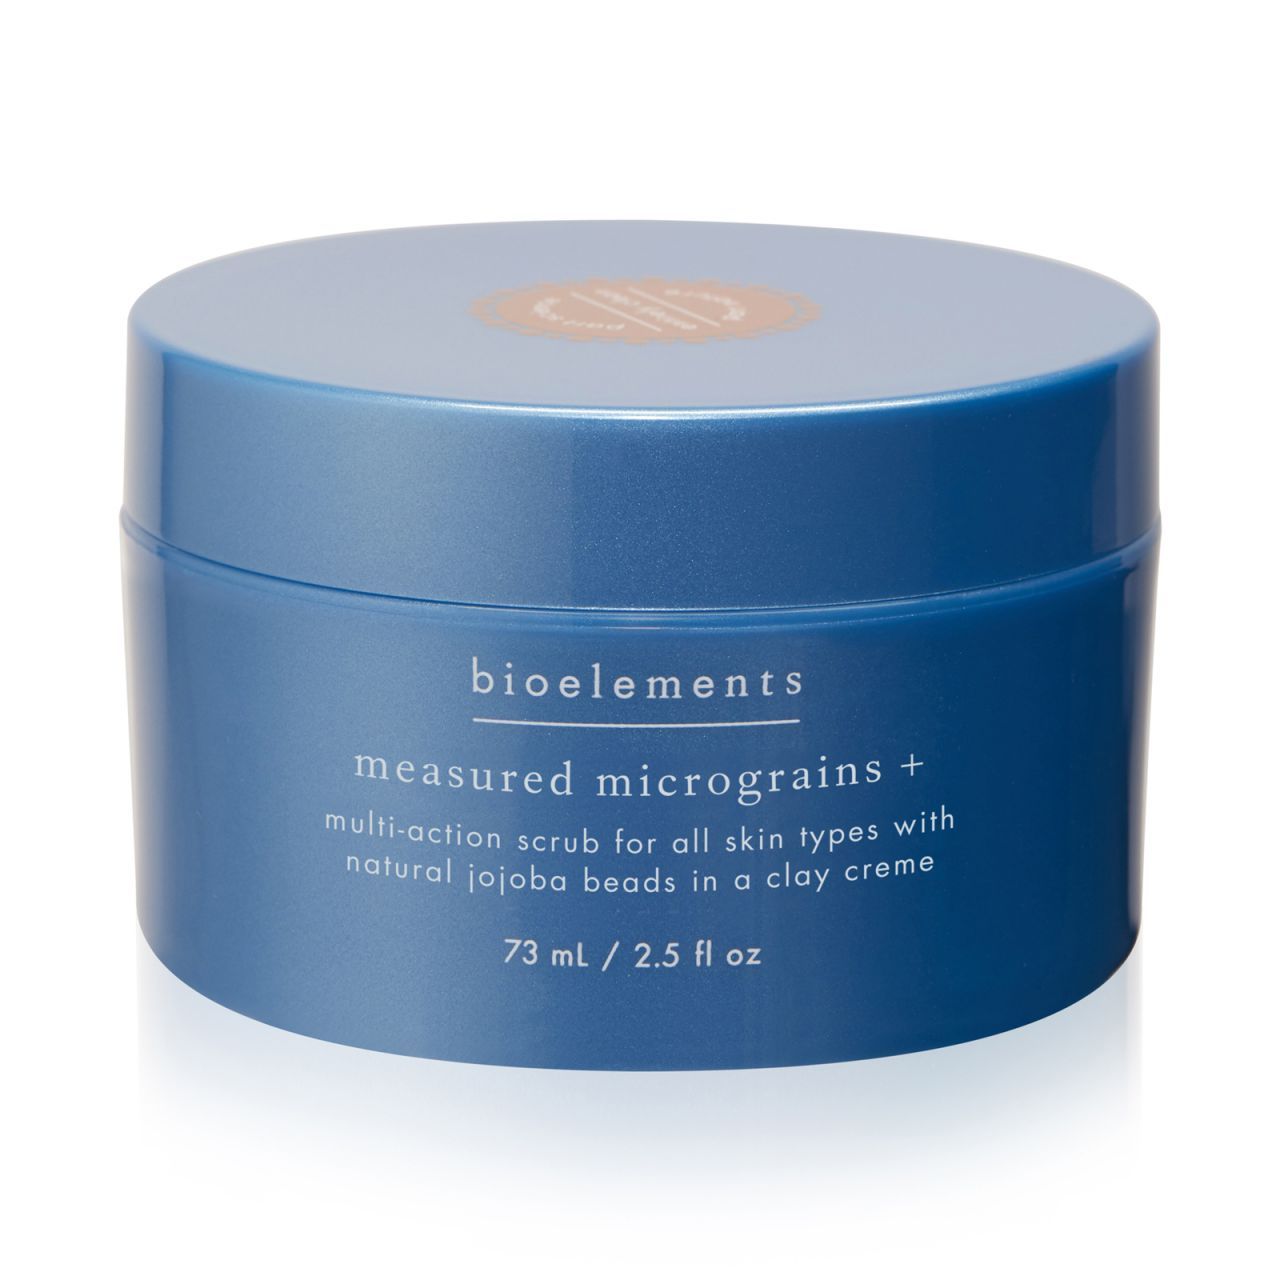 Bioelements - Багатофункціональний скраб для всіх типів шкіри, в тому числі чутливої Measured Micrograins + - Зображення 1